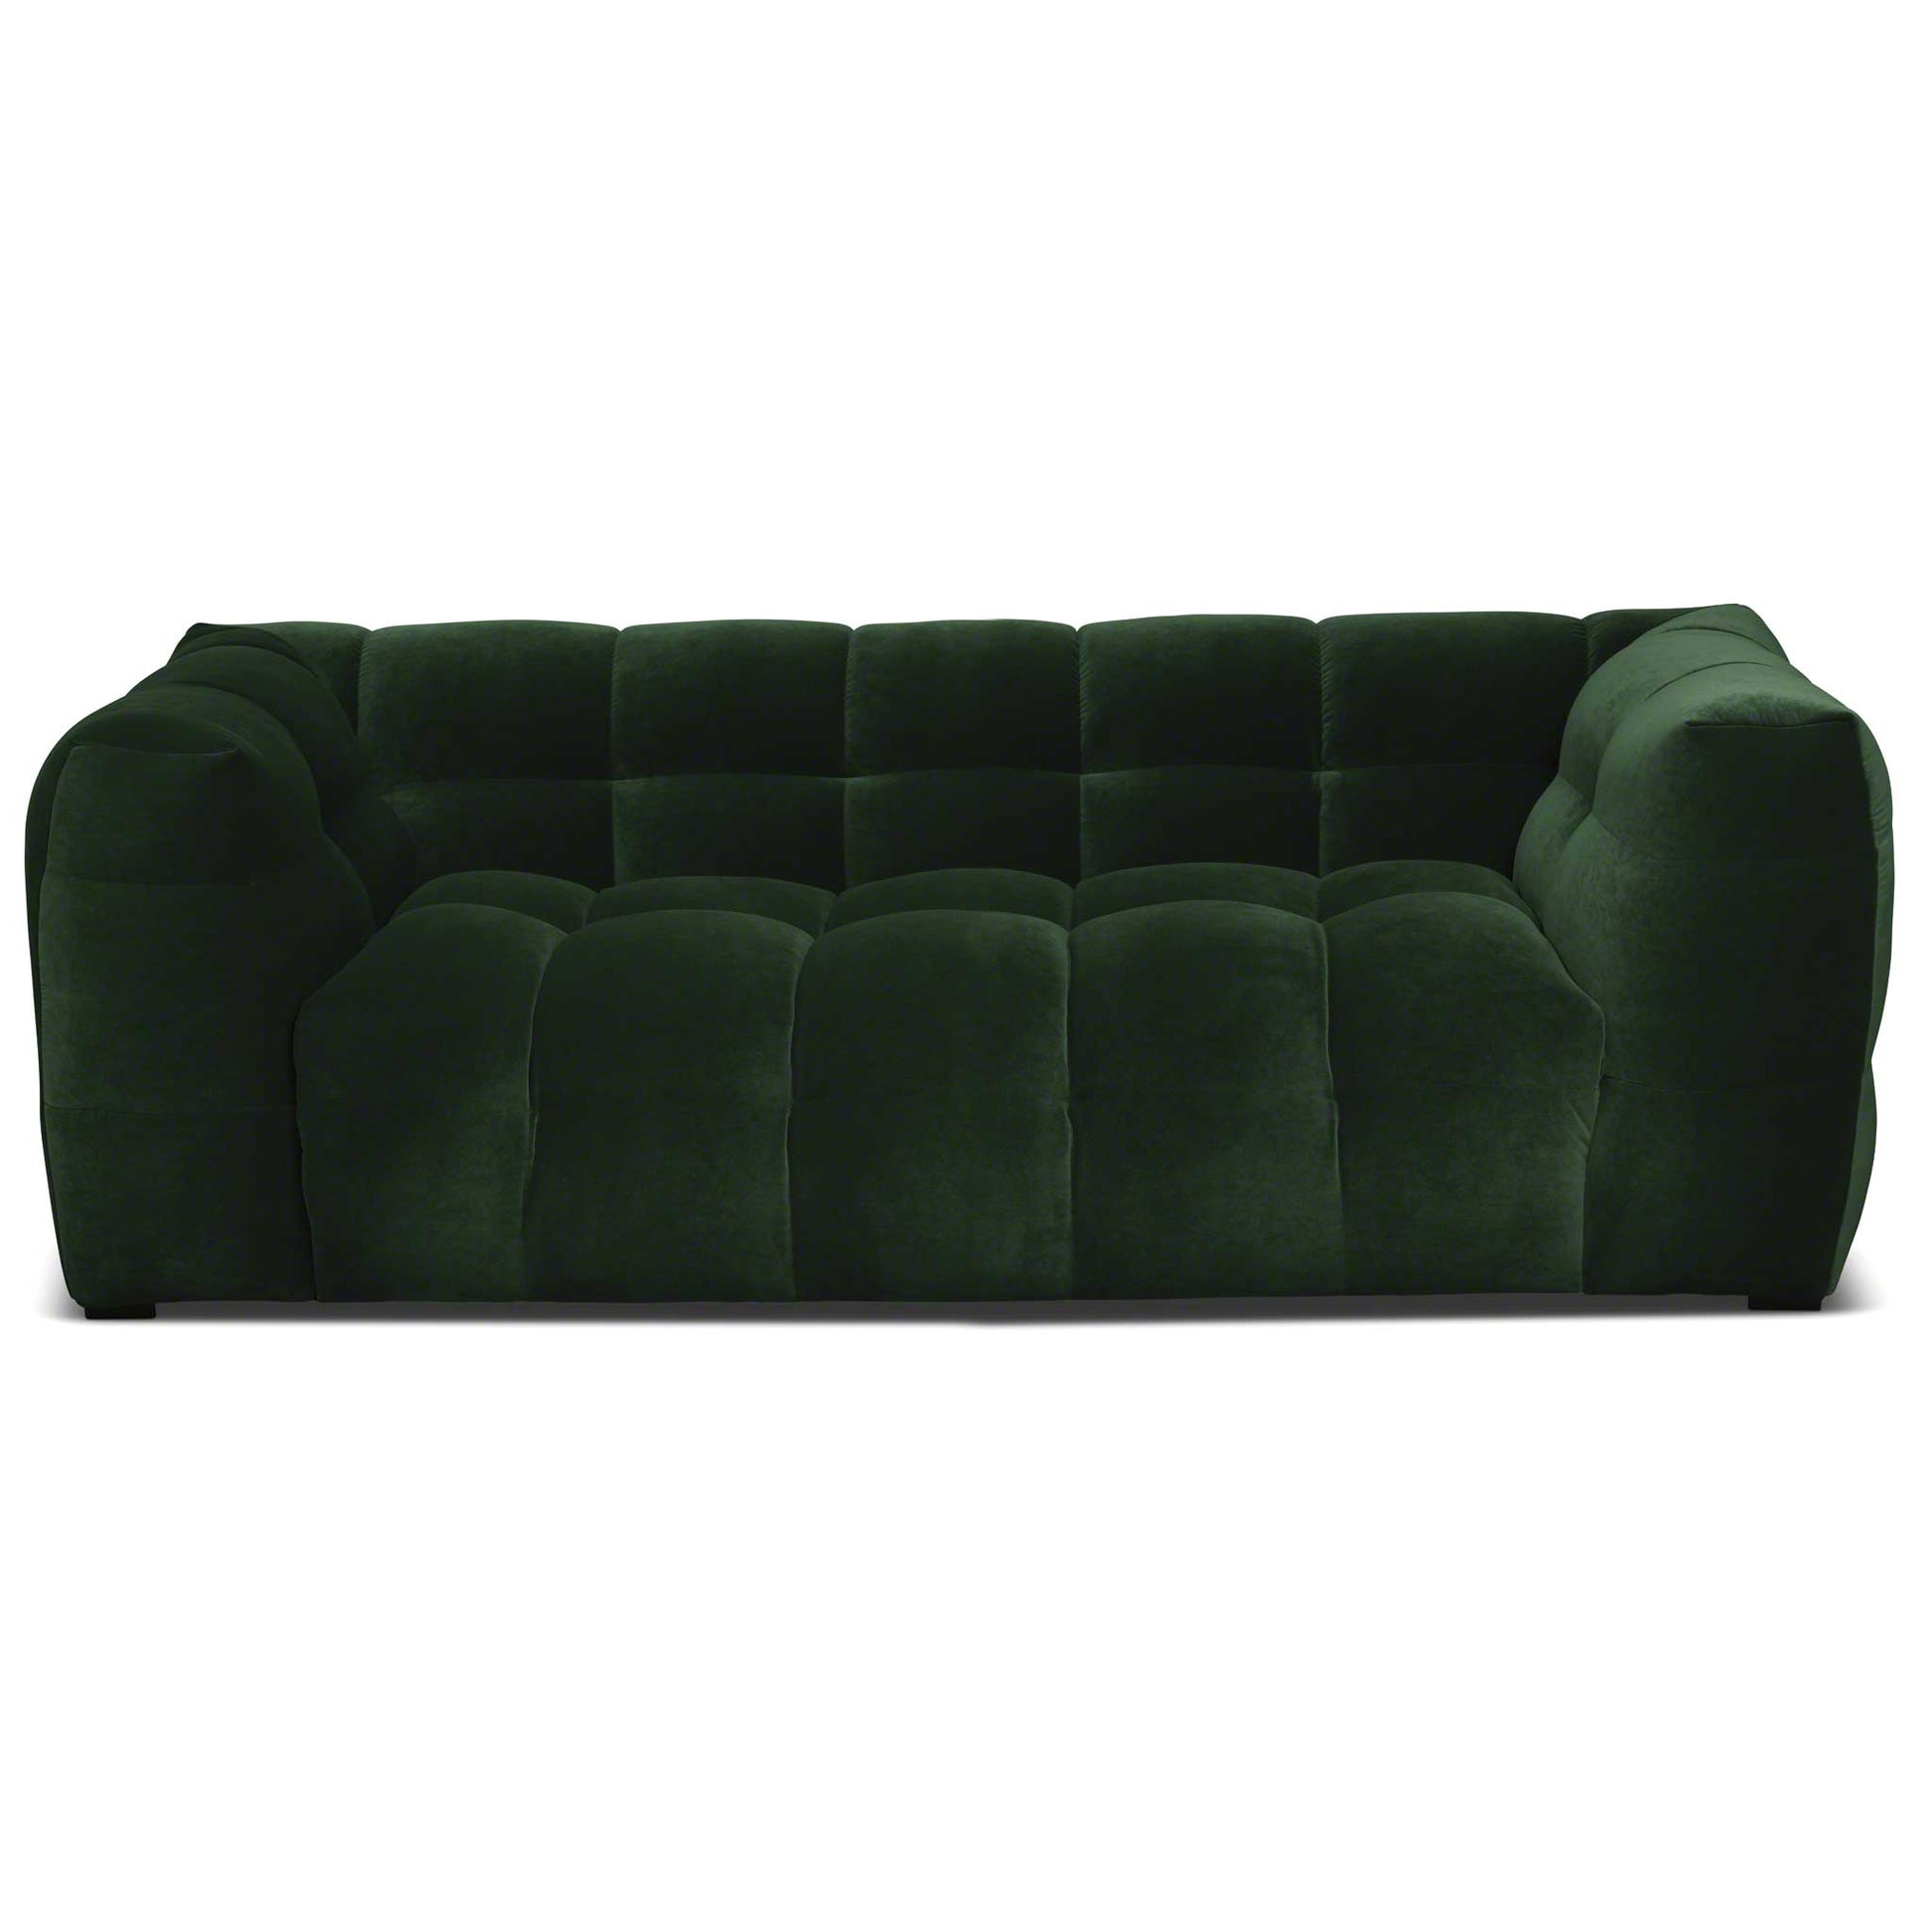 Snygg liten 2-sits soffa i grön sammet av hög kvalitet. Bubbligt möbelformspråk.